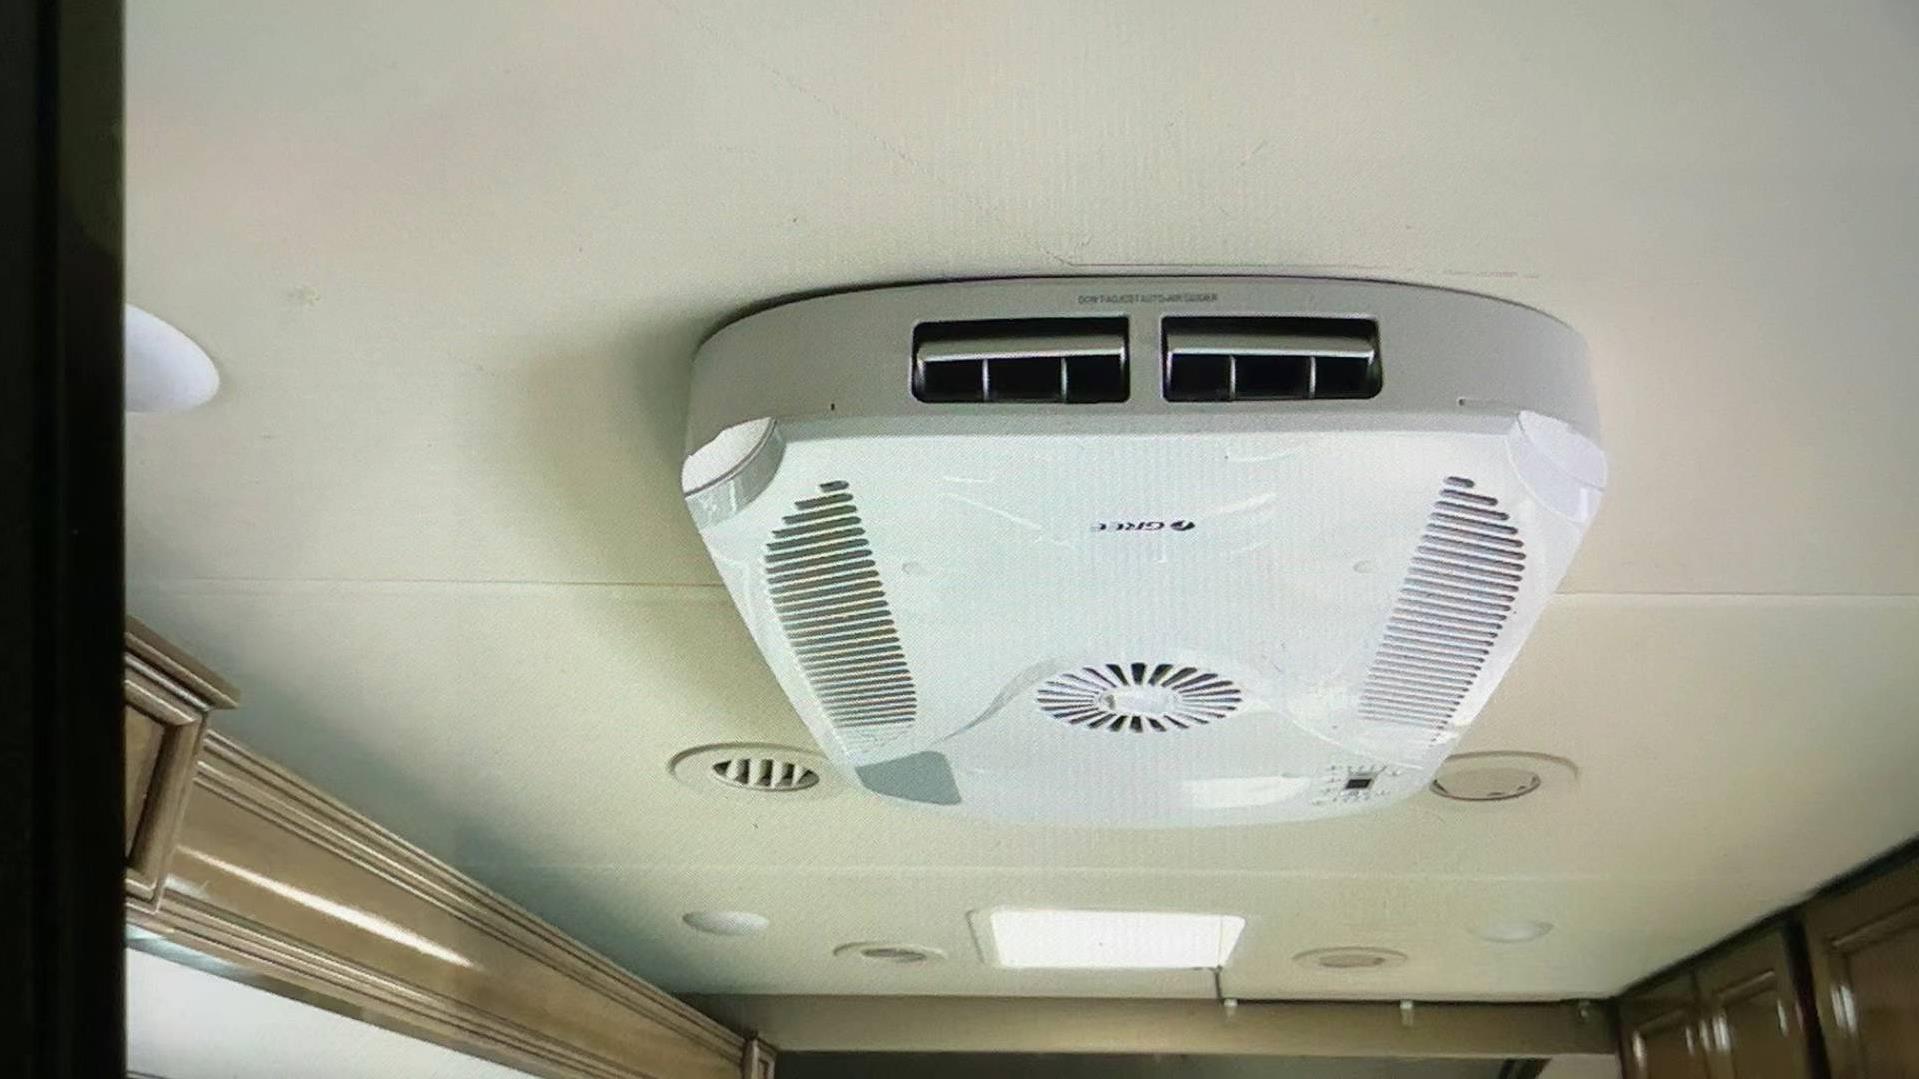  【建築】 格力TOSOT房车空调同类产品的天花板